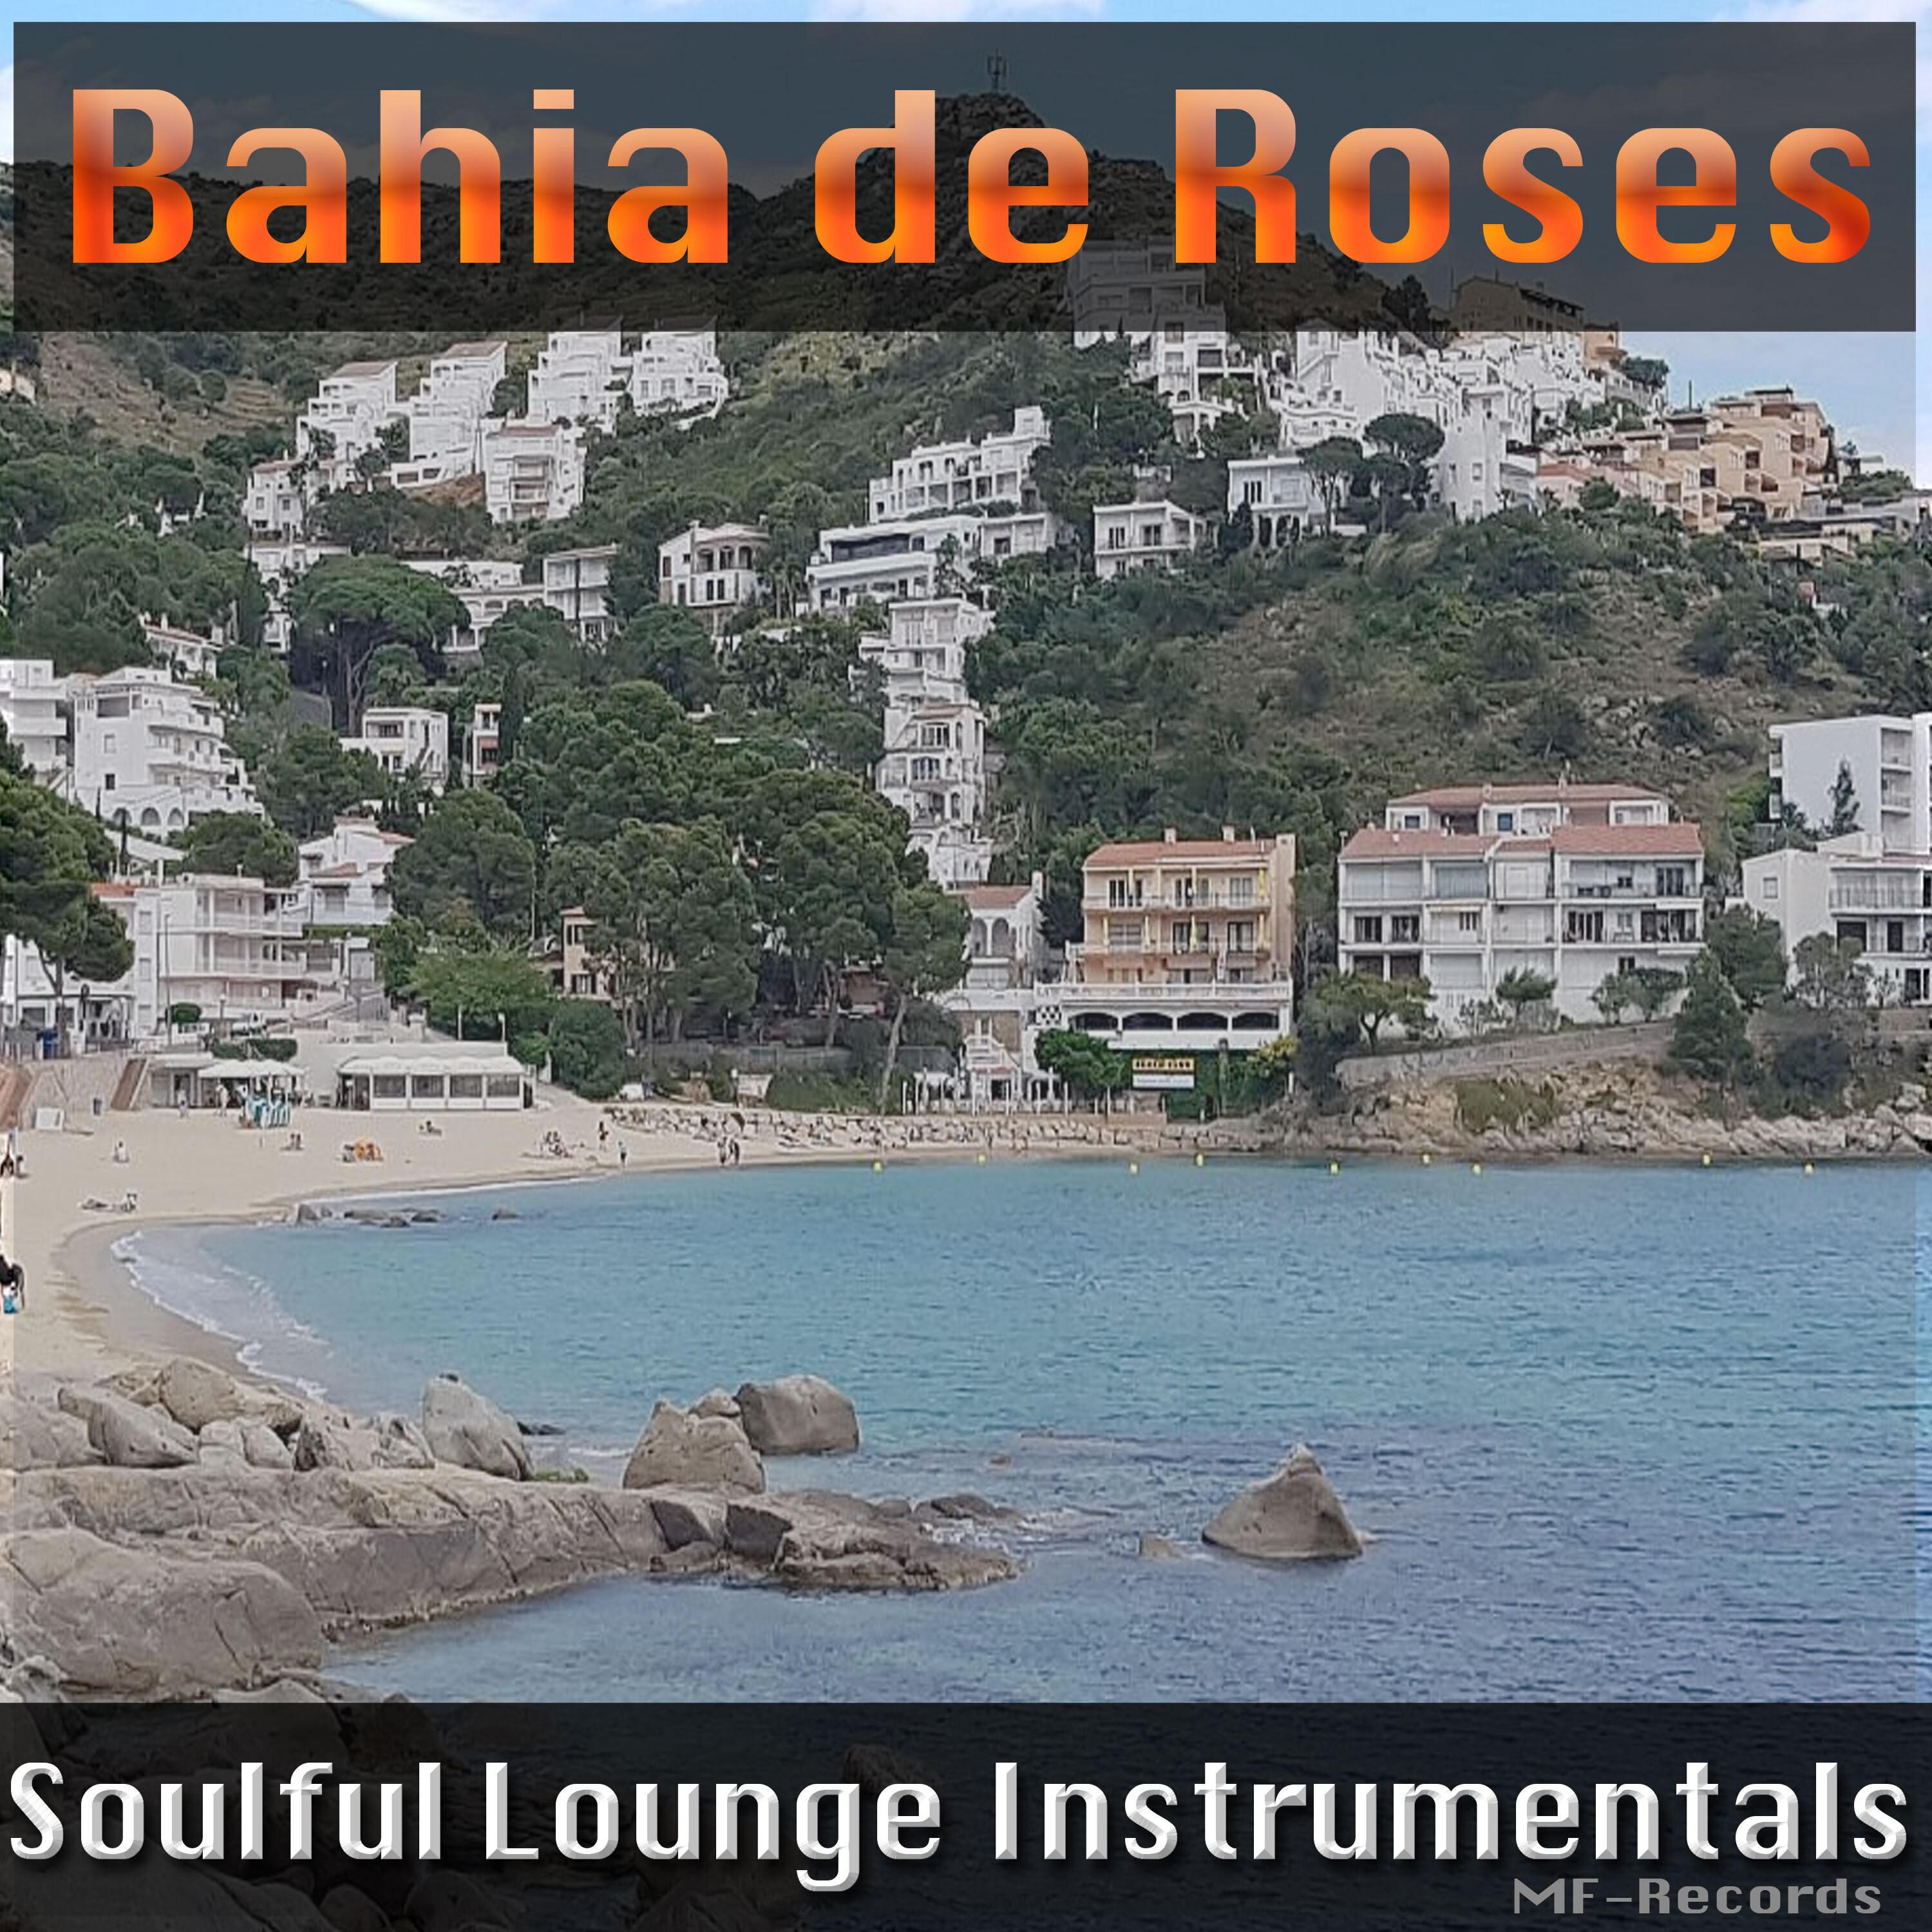 Bahia de Roses - My Electronic Piano